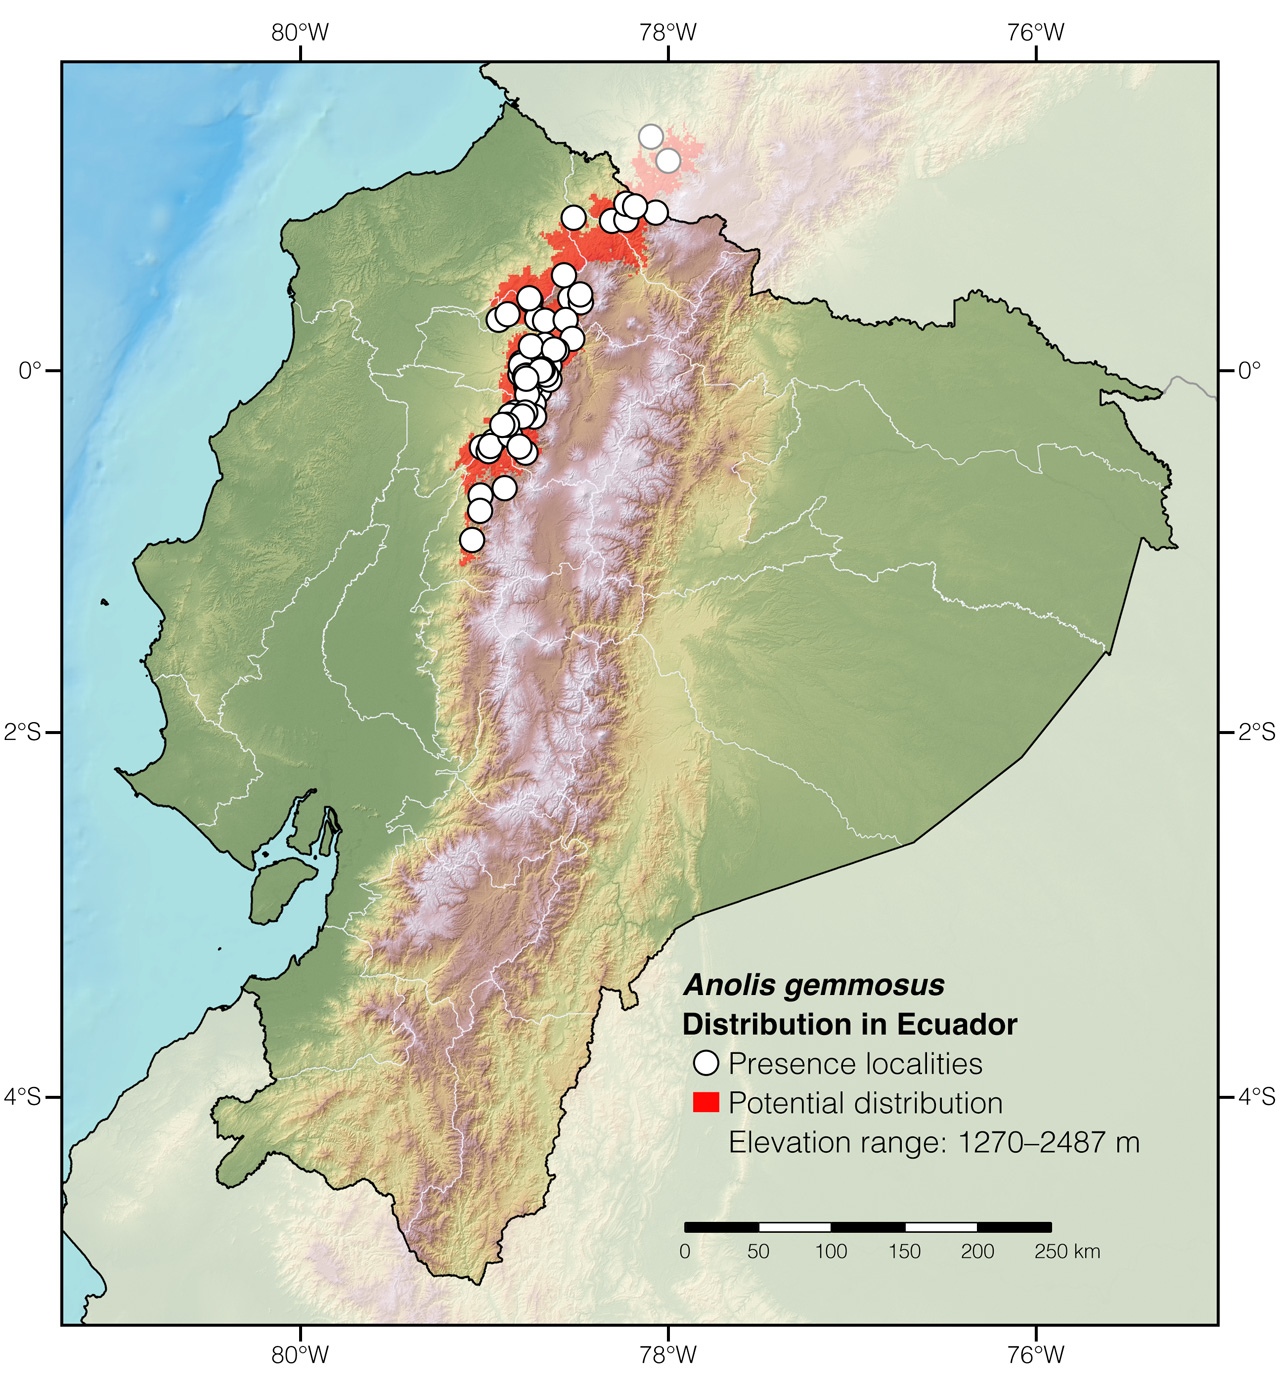 Distribution of Anolis gemmosus in Ecuador